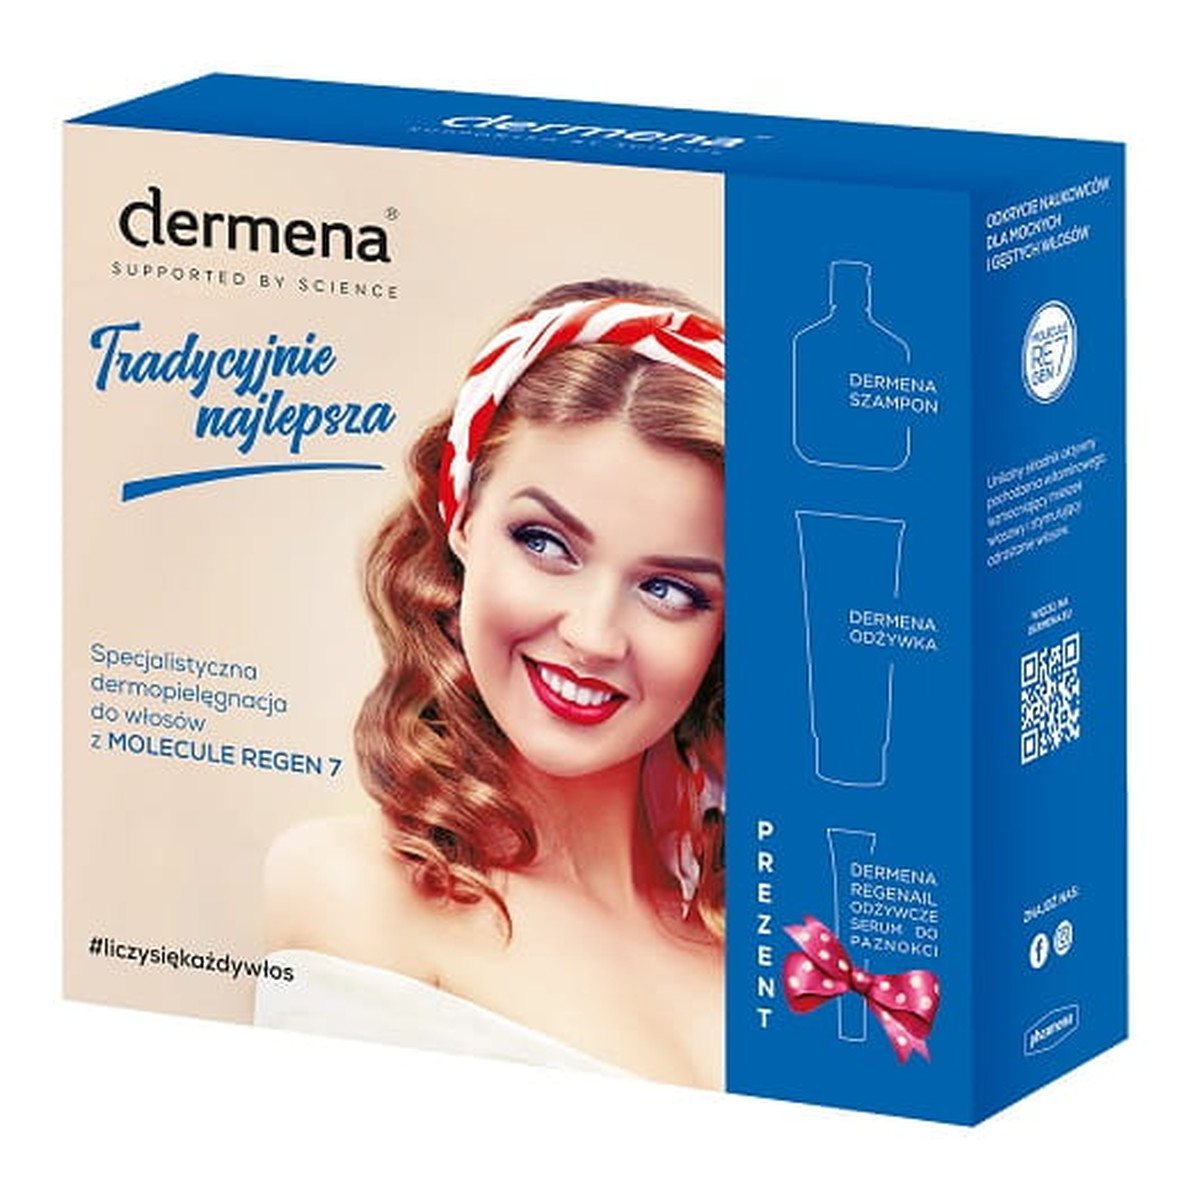 Dermena Hair Care Zestaw prezentowy (szampon 200ml+odżywka 200ml+serum )